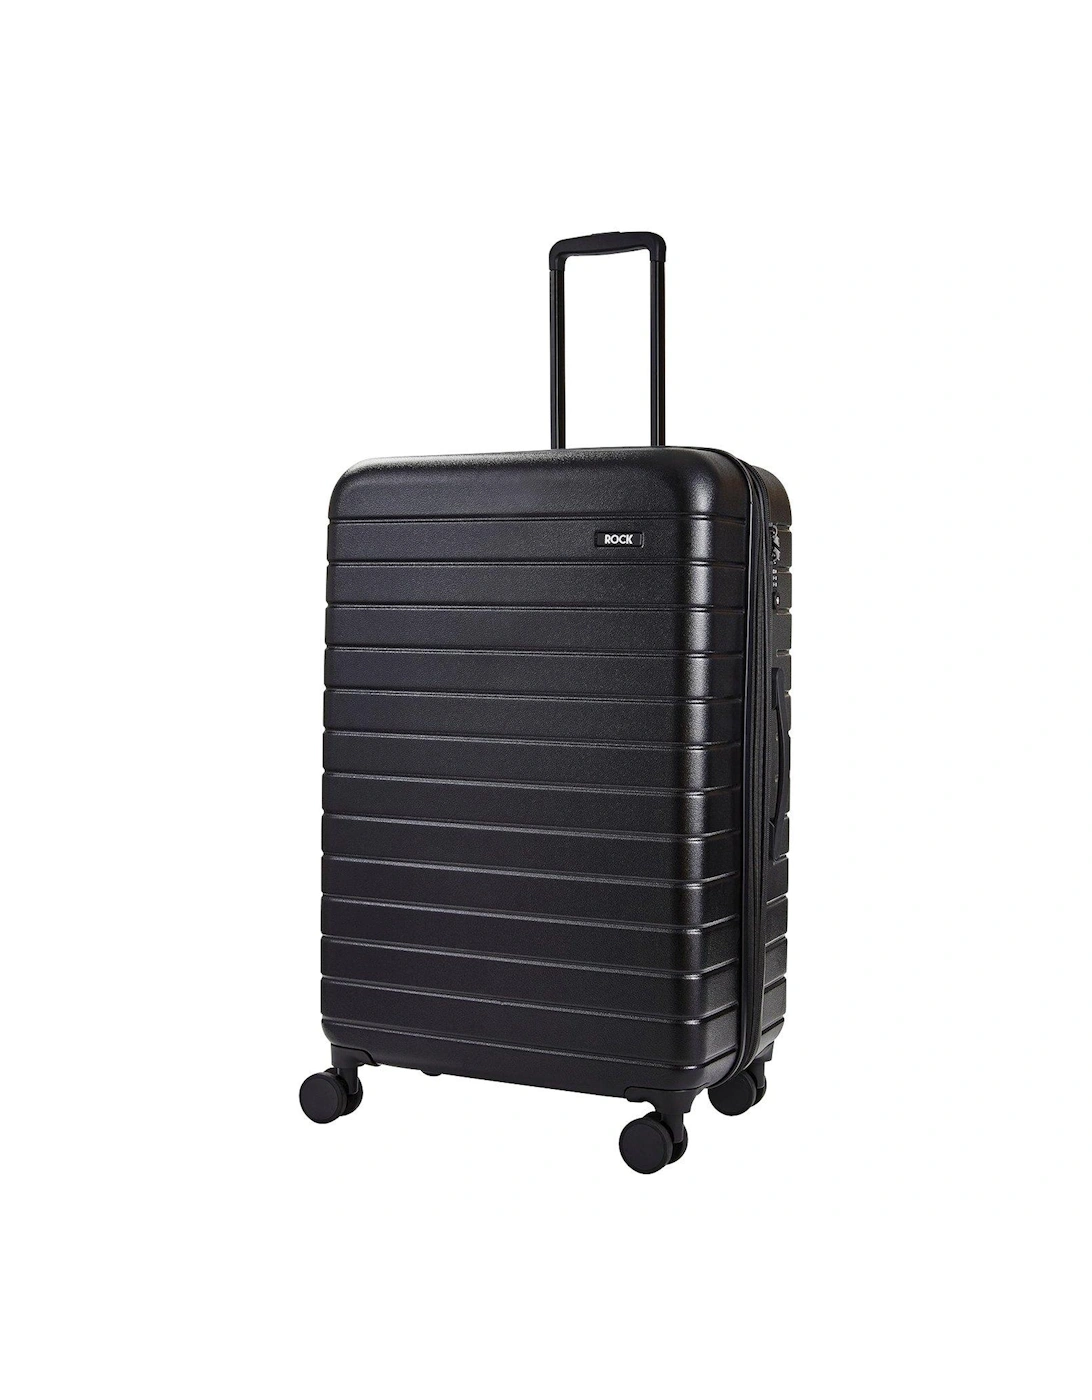 Novo Large 8-Wheel Suitcase - Black, 2 of 1